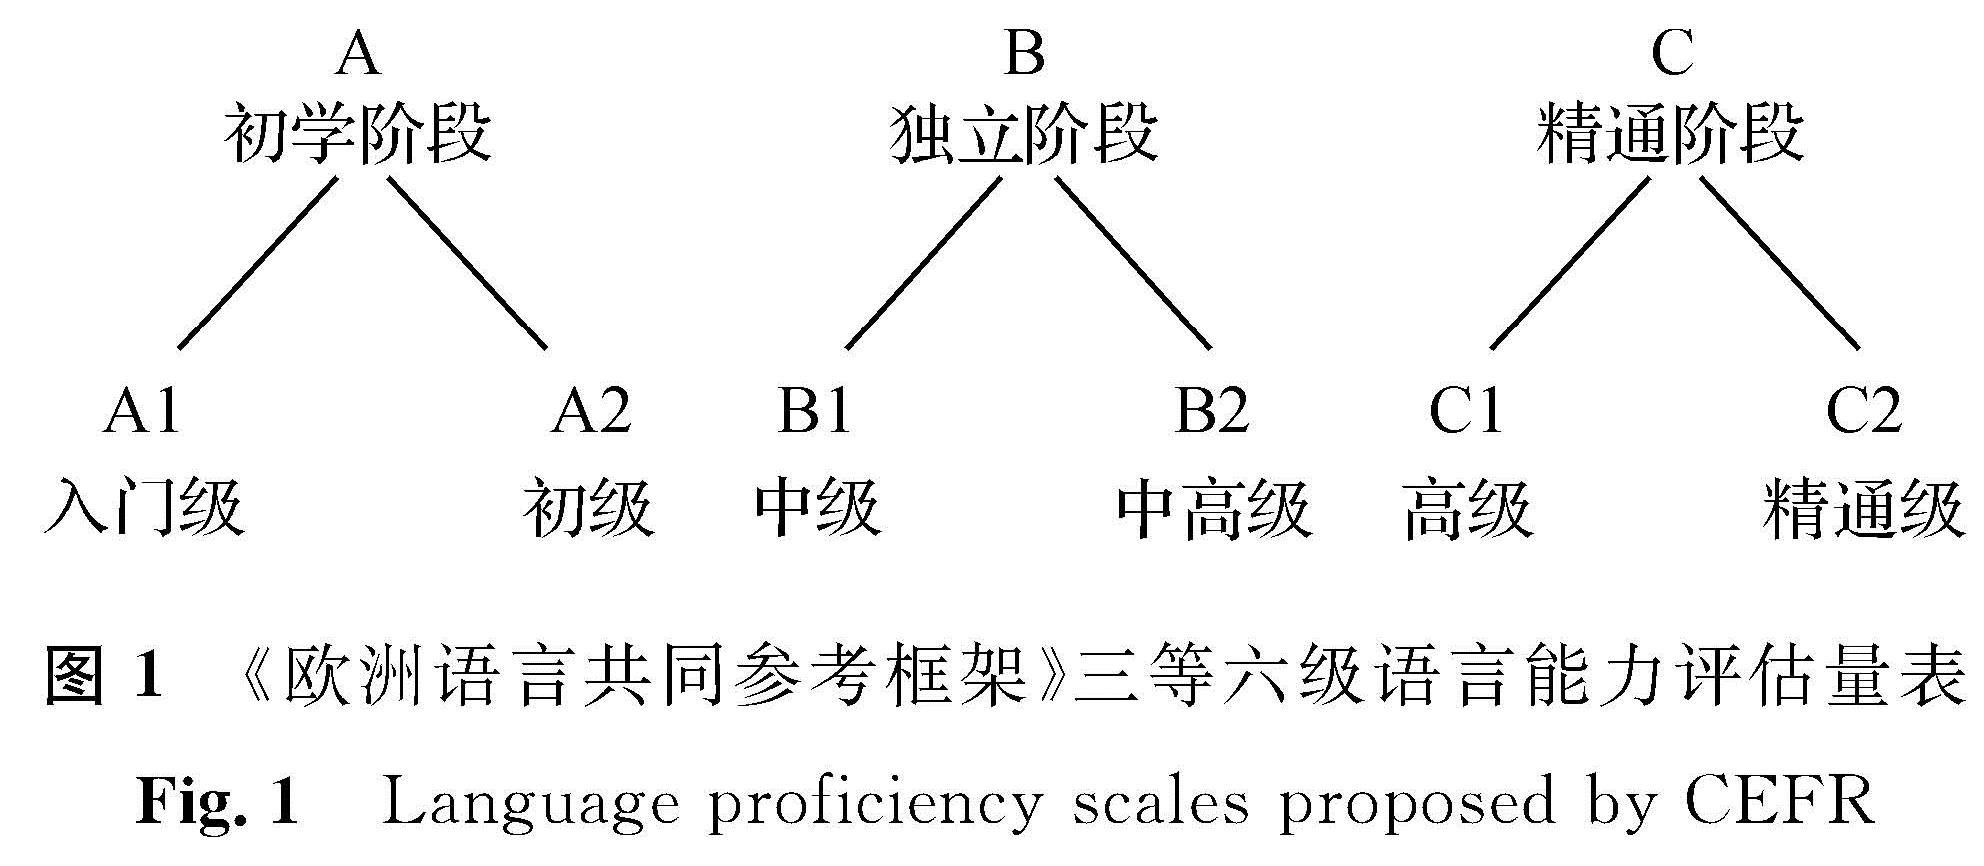 图1 《欧洲语言共同参考框架》三等六级语言能力评估量表<br/>Fig.1 Language proficiency scales proposed by CEFR